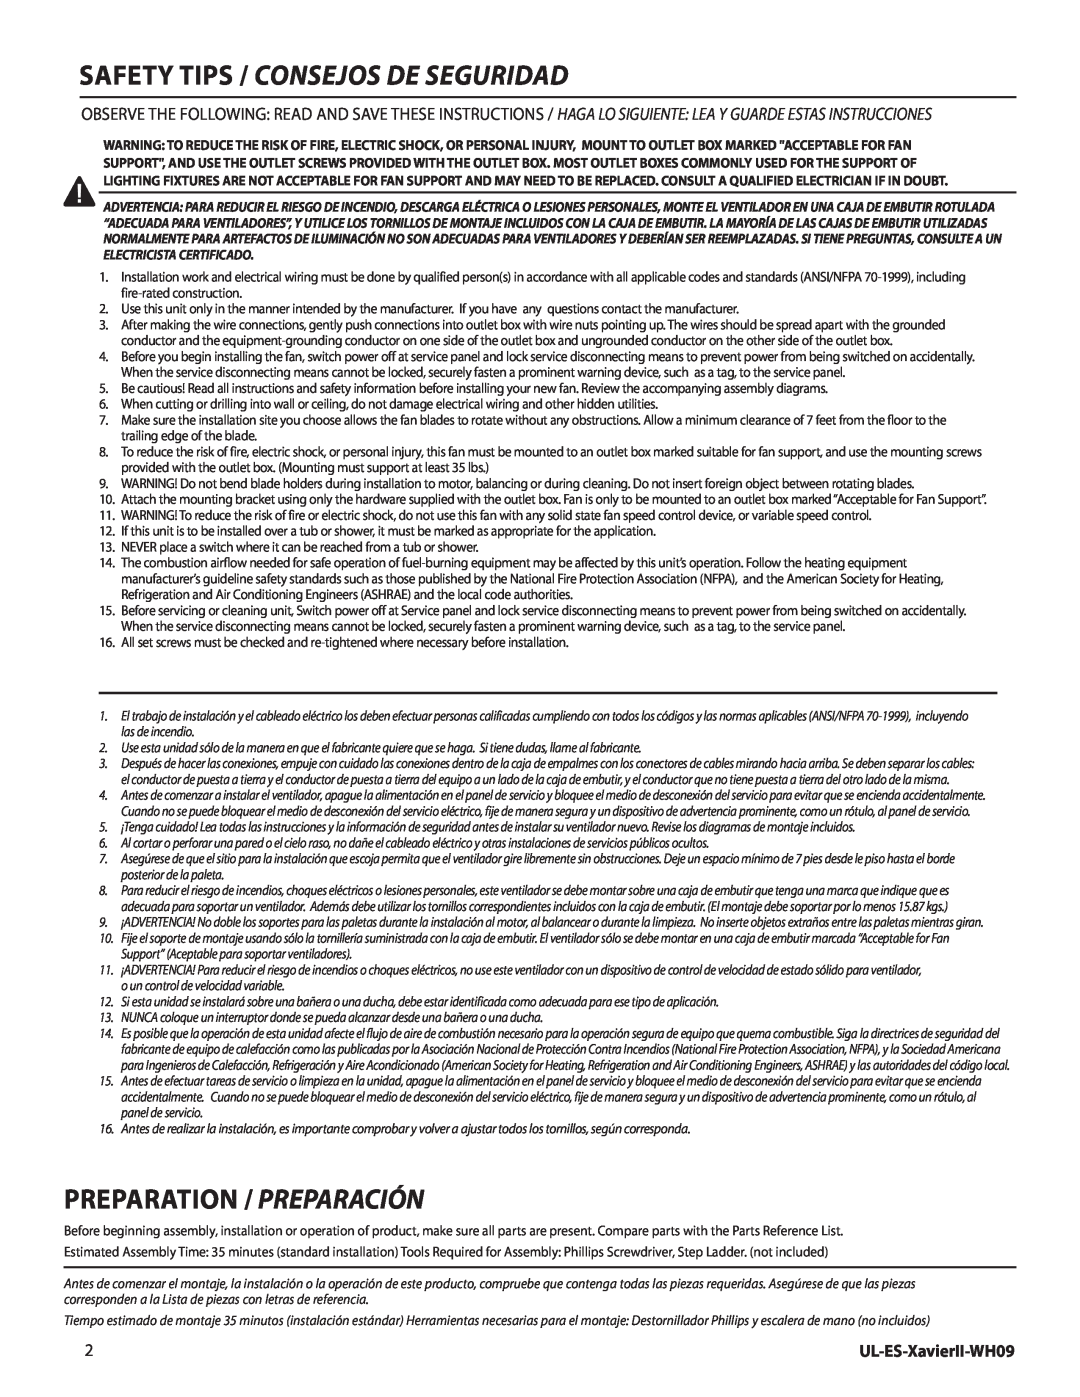 Westinghouse manual Safety tips / Consejos de seguridad, Preparation / Preparación, UL-ES-XavierII-WH09 